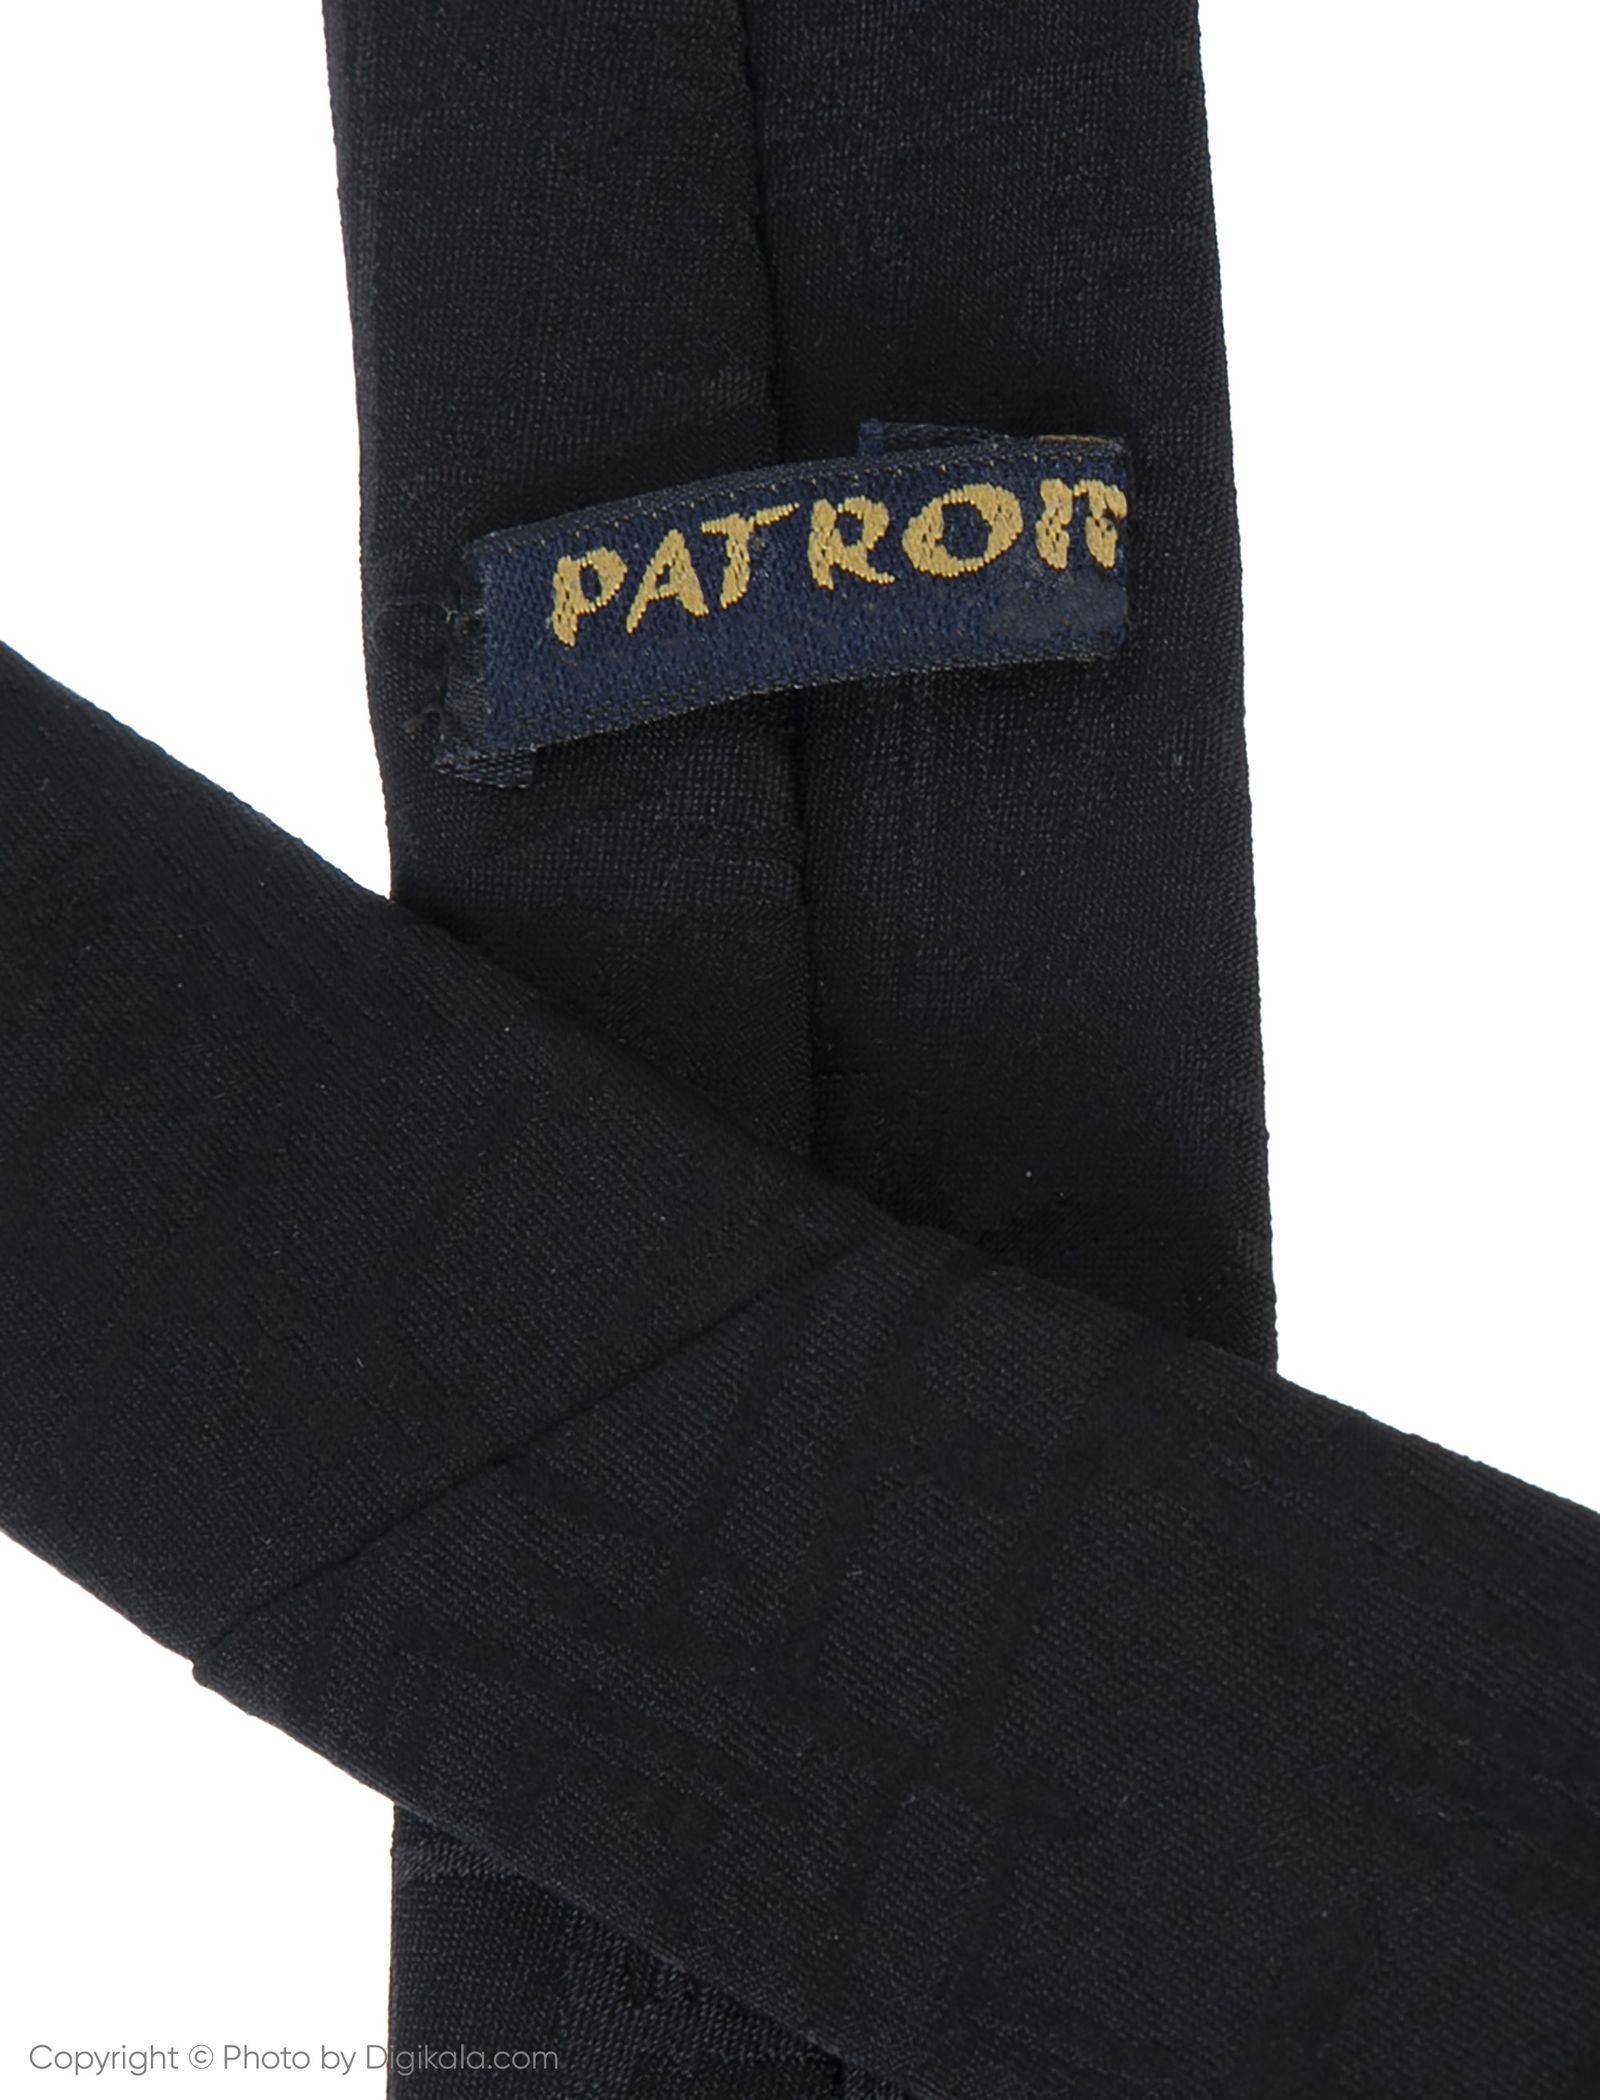 کراوات پاترون مدل TGDN6 - مشکی - 5